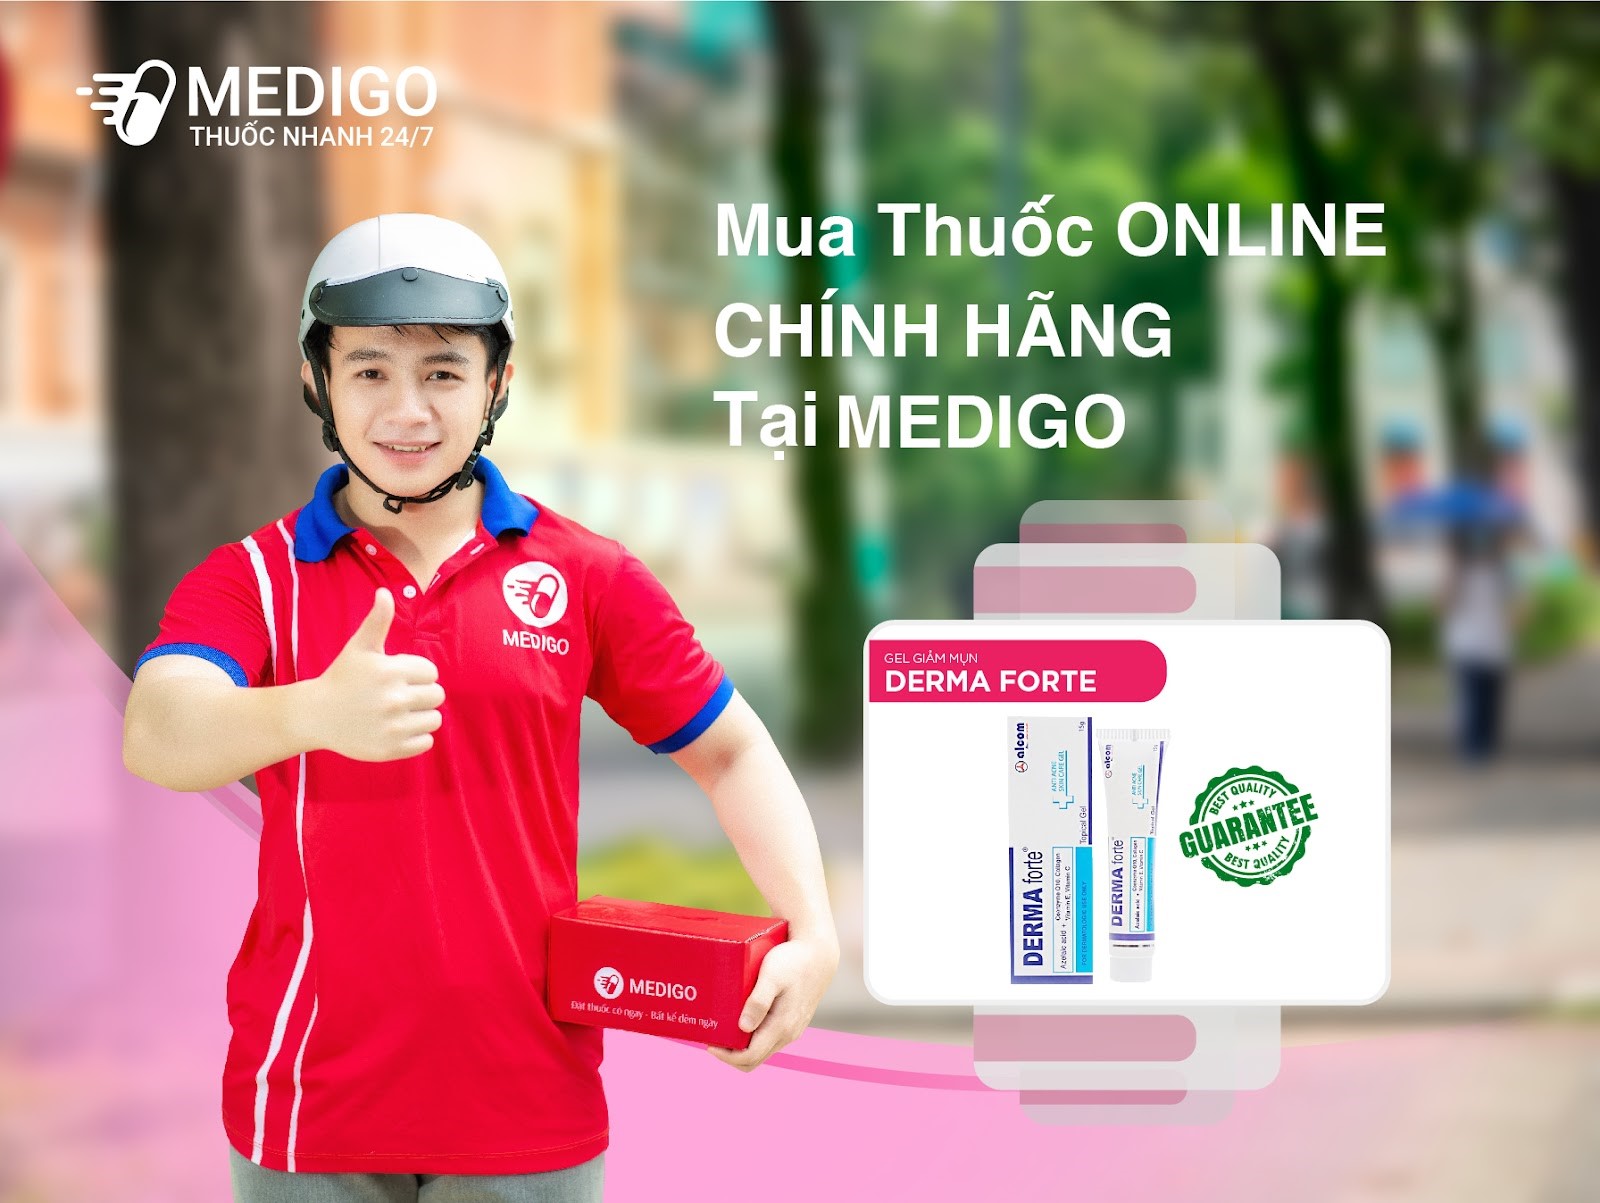 Mua thuốc online chính hãng tại Medigo - Nguồn ảnh: Medigo app